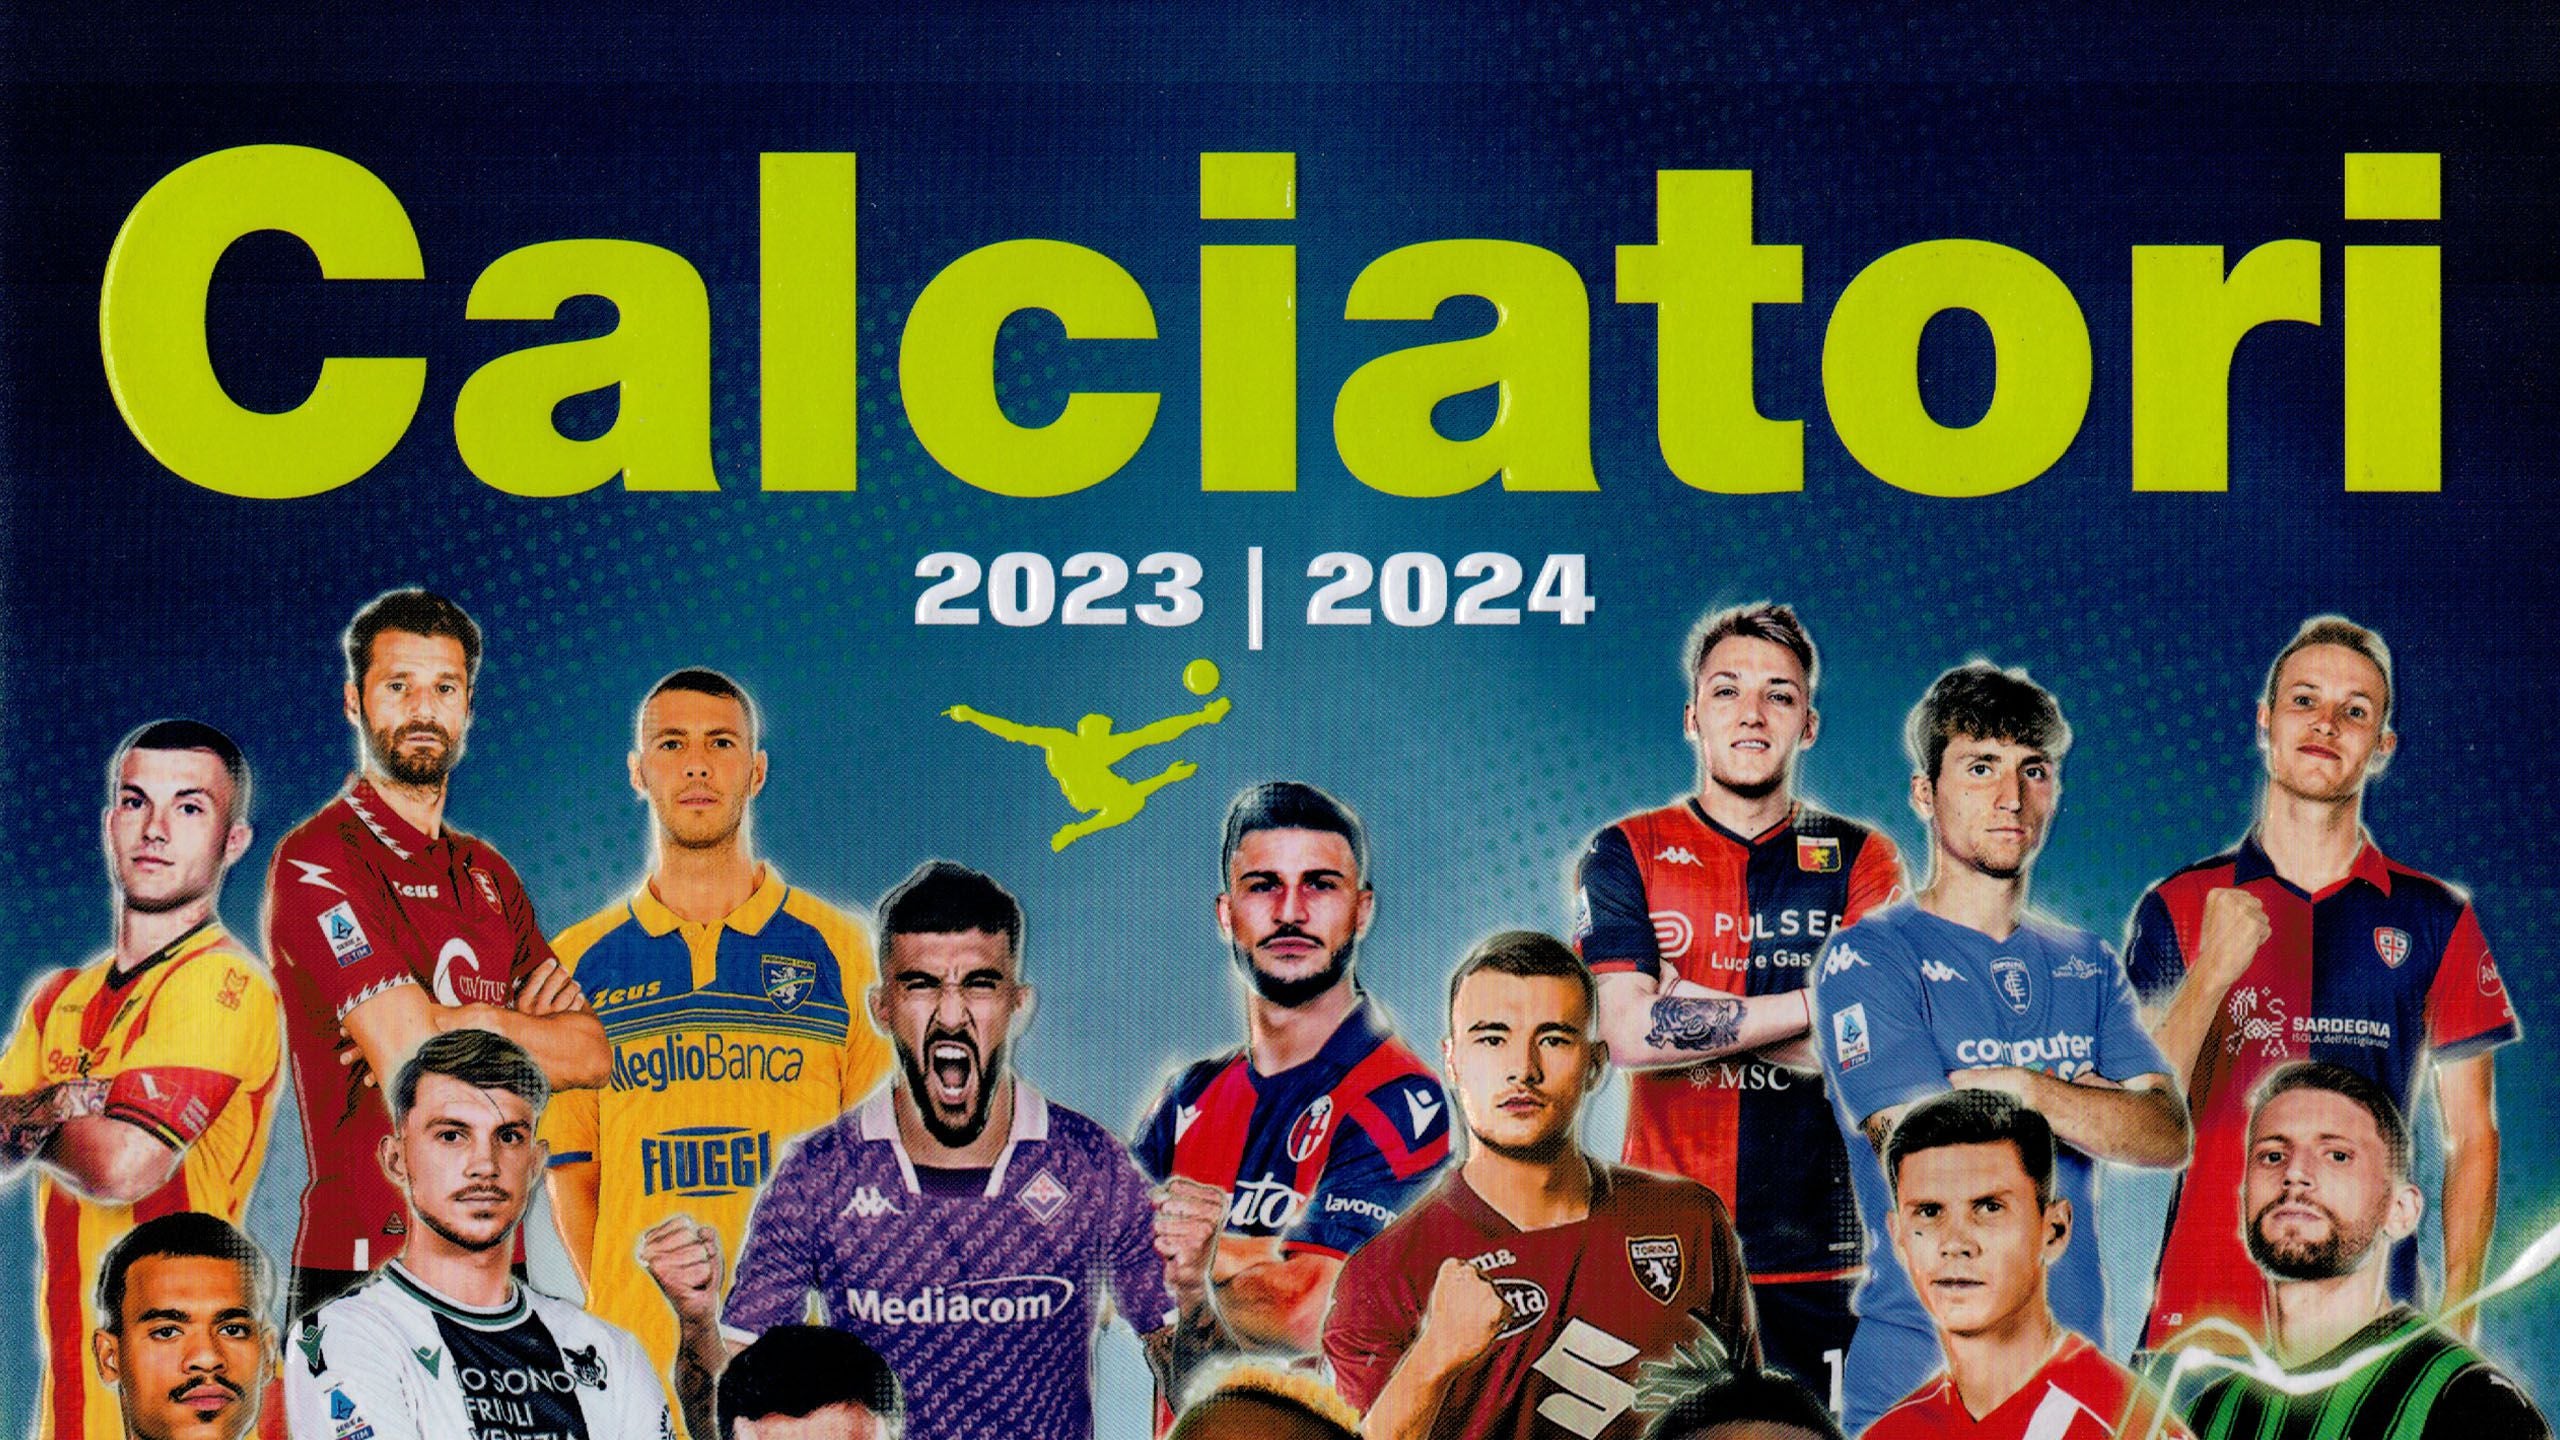 Calciatori 2022-2023 - figurine mancanti